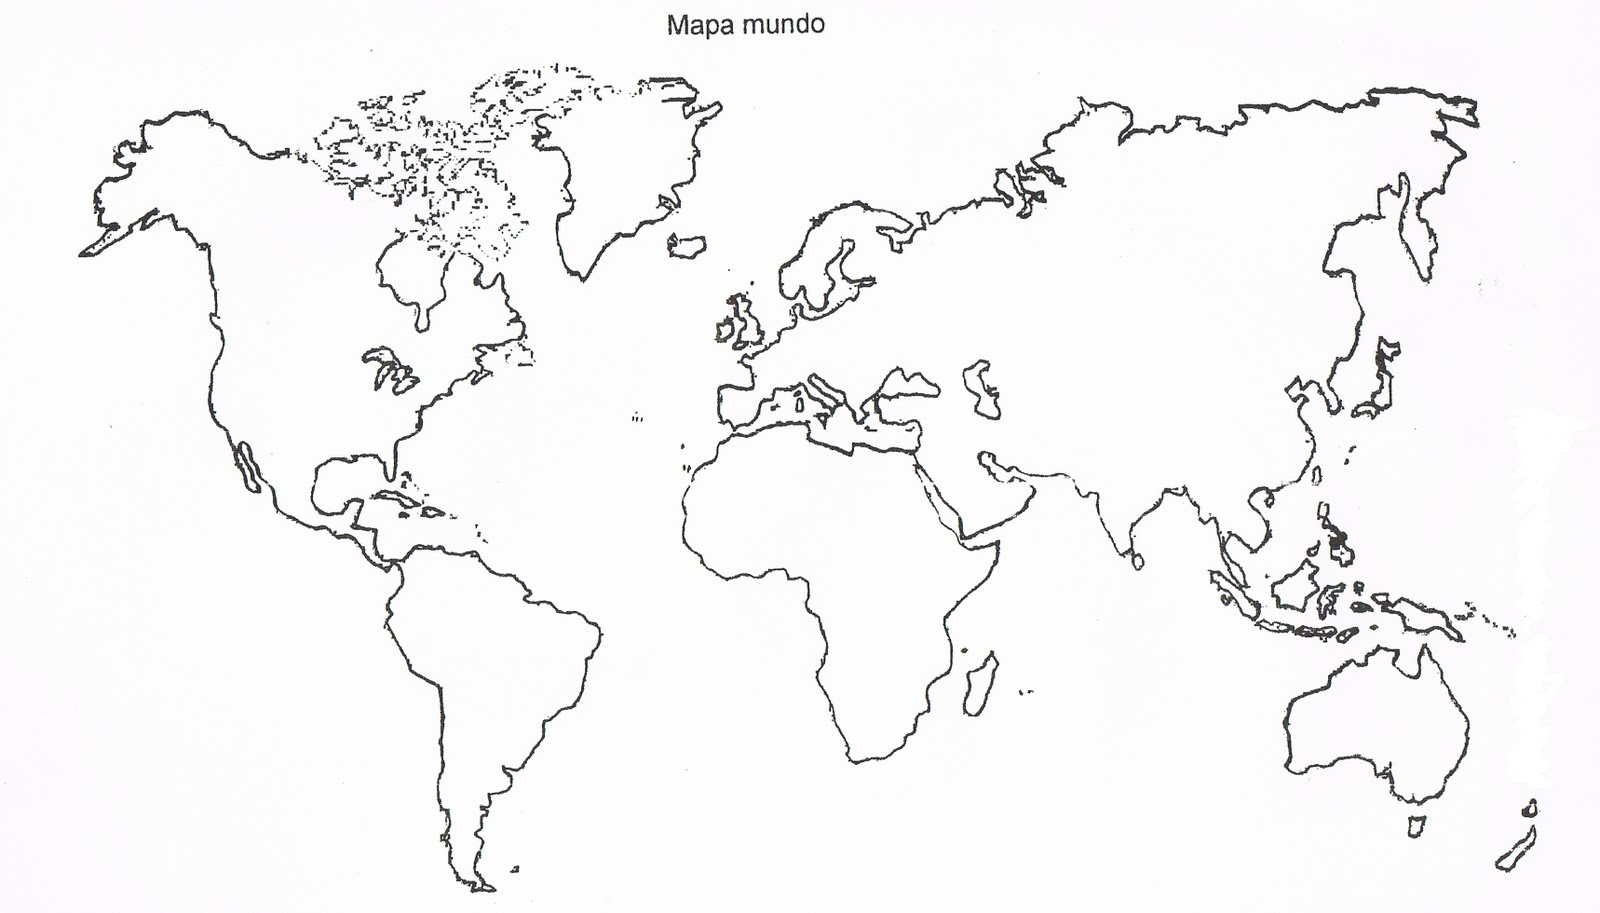 sinalmais: Um mapa mudo mundial